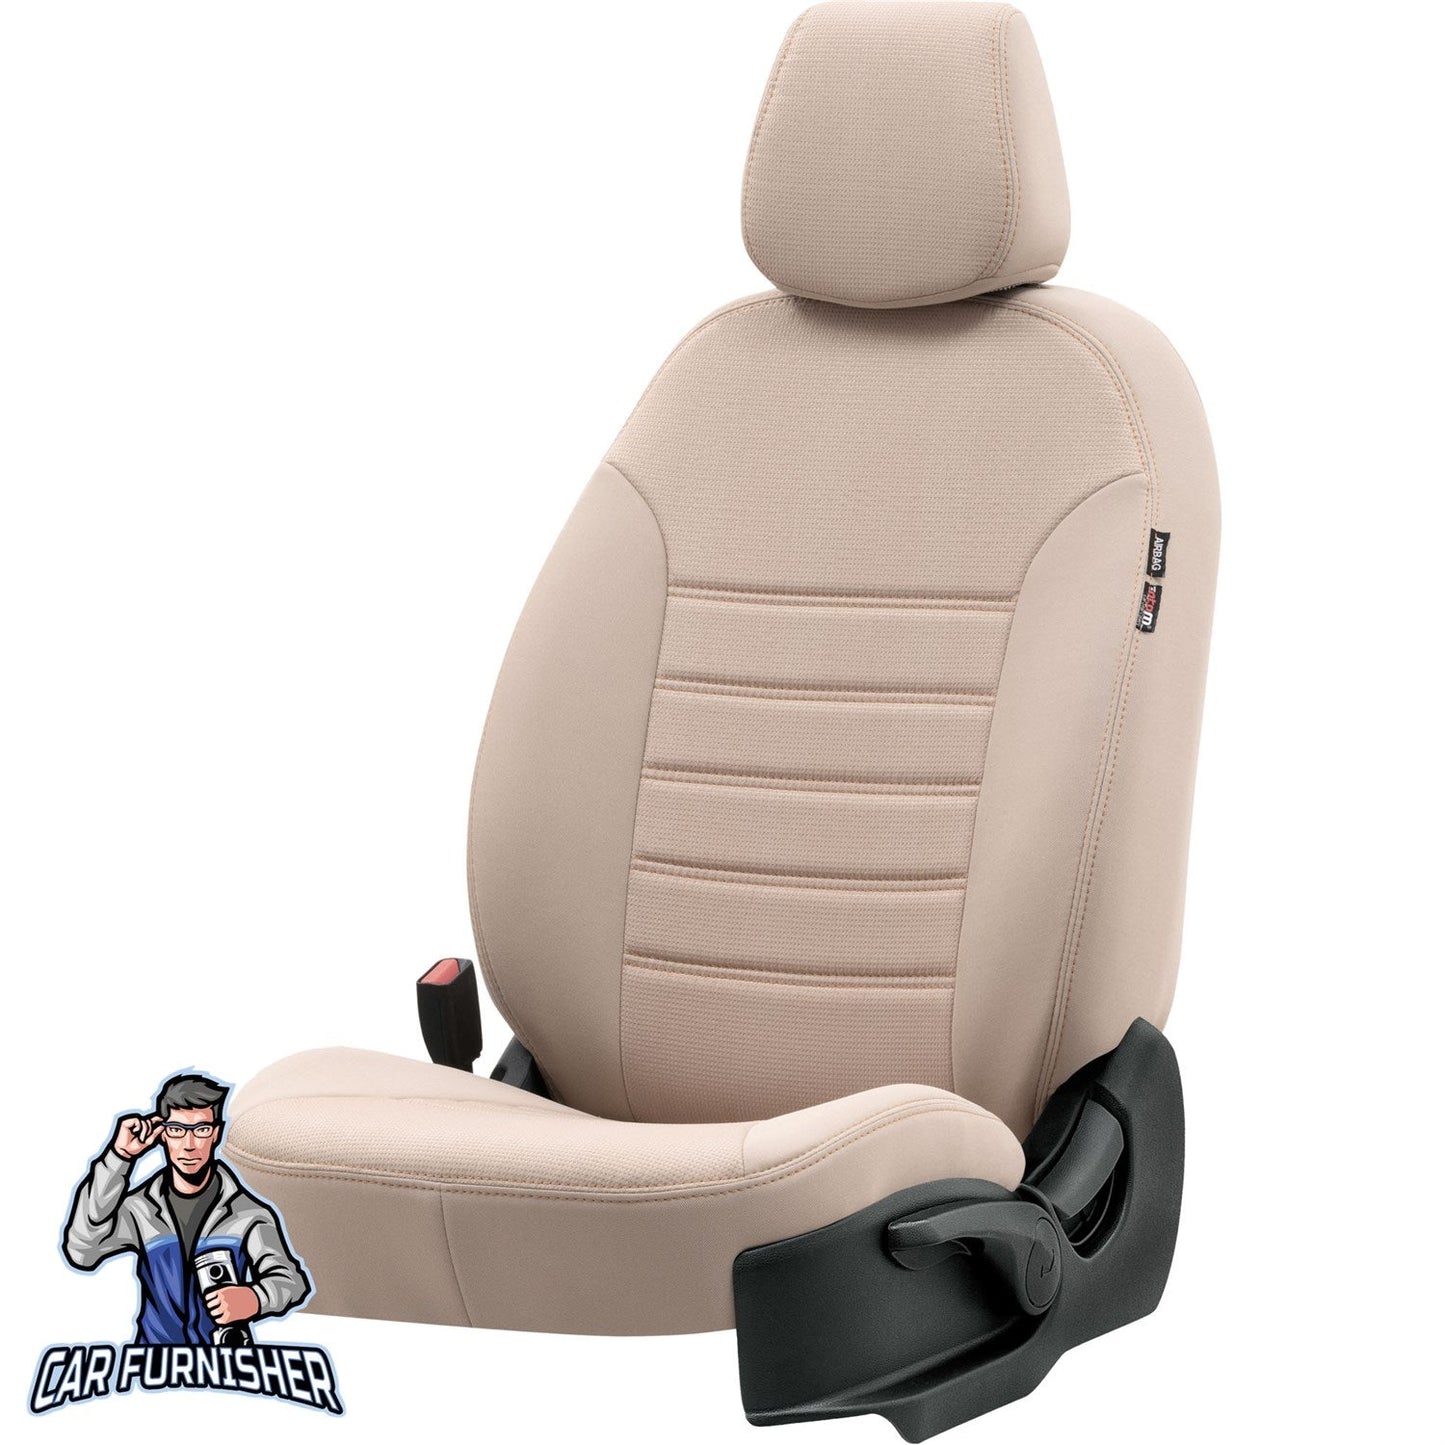 Toyota Aygo Seat Cover Original Jacquard Design Beige Jacquard Fabric